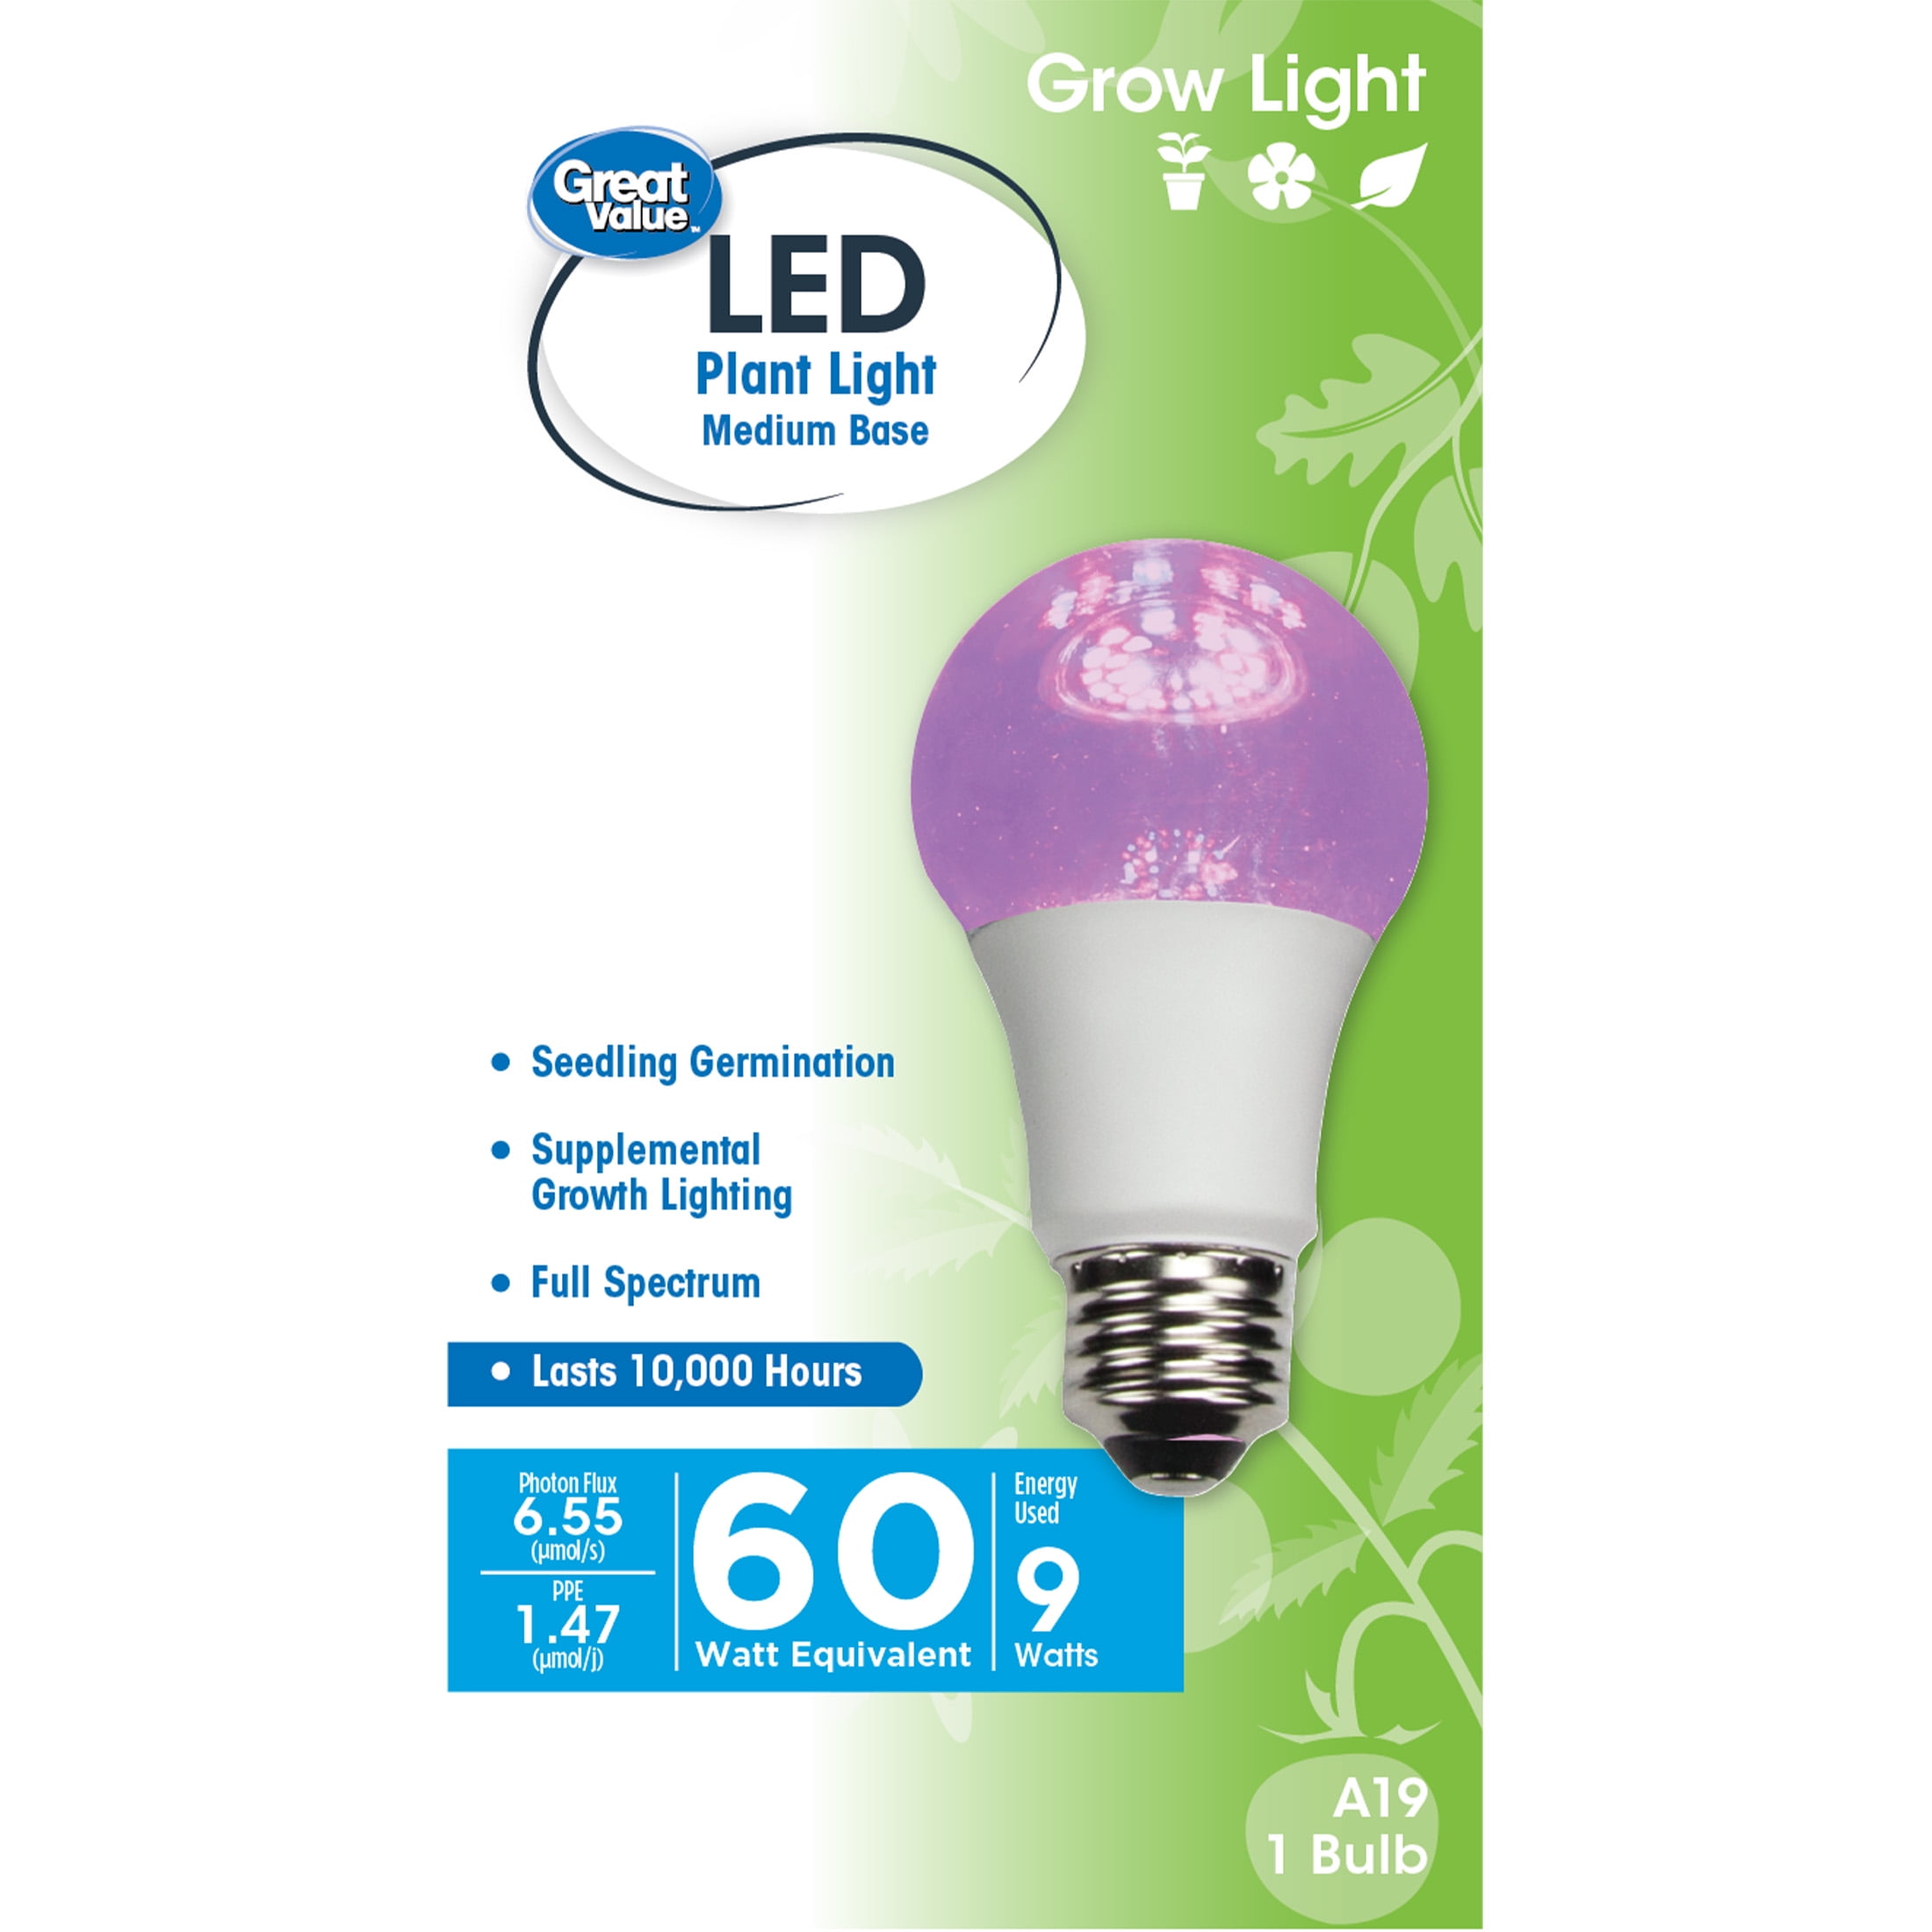 Details about   4x 28W Full Spectrum E27 E26 LED Grow Light Bulb Lamp for Veg Bloom Indoor Plant 